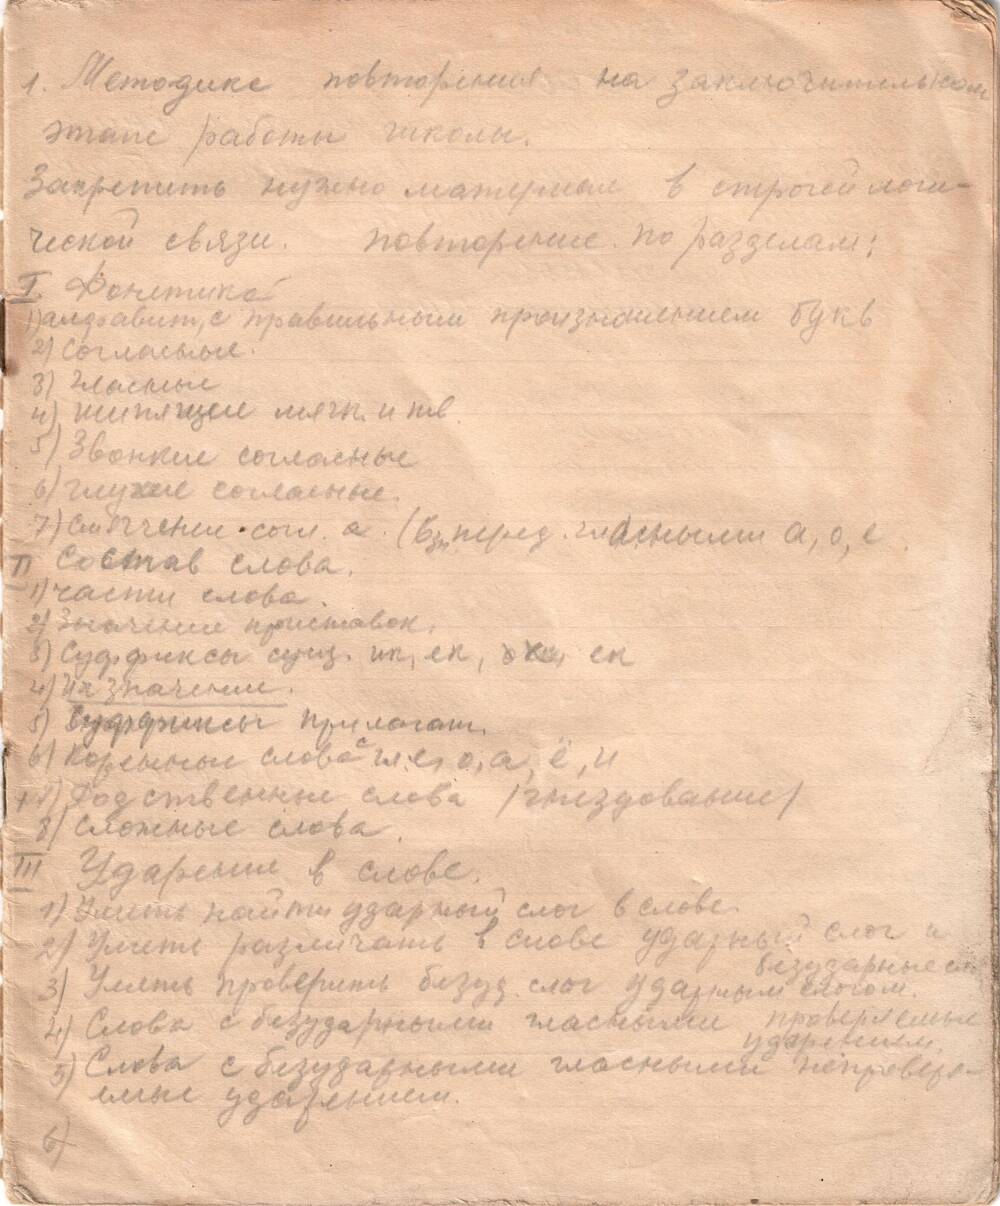 Тетрадь экзаменов 4-й класс Ярополецкой средней школы, 1947 - 48 гг.